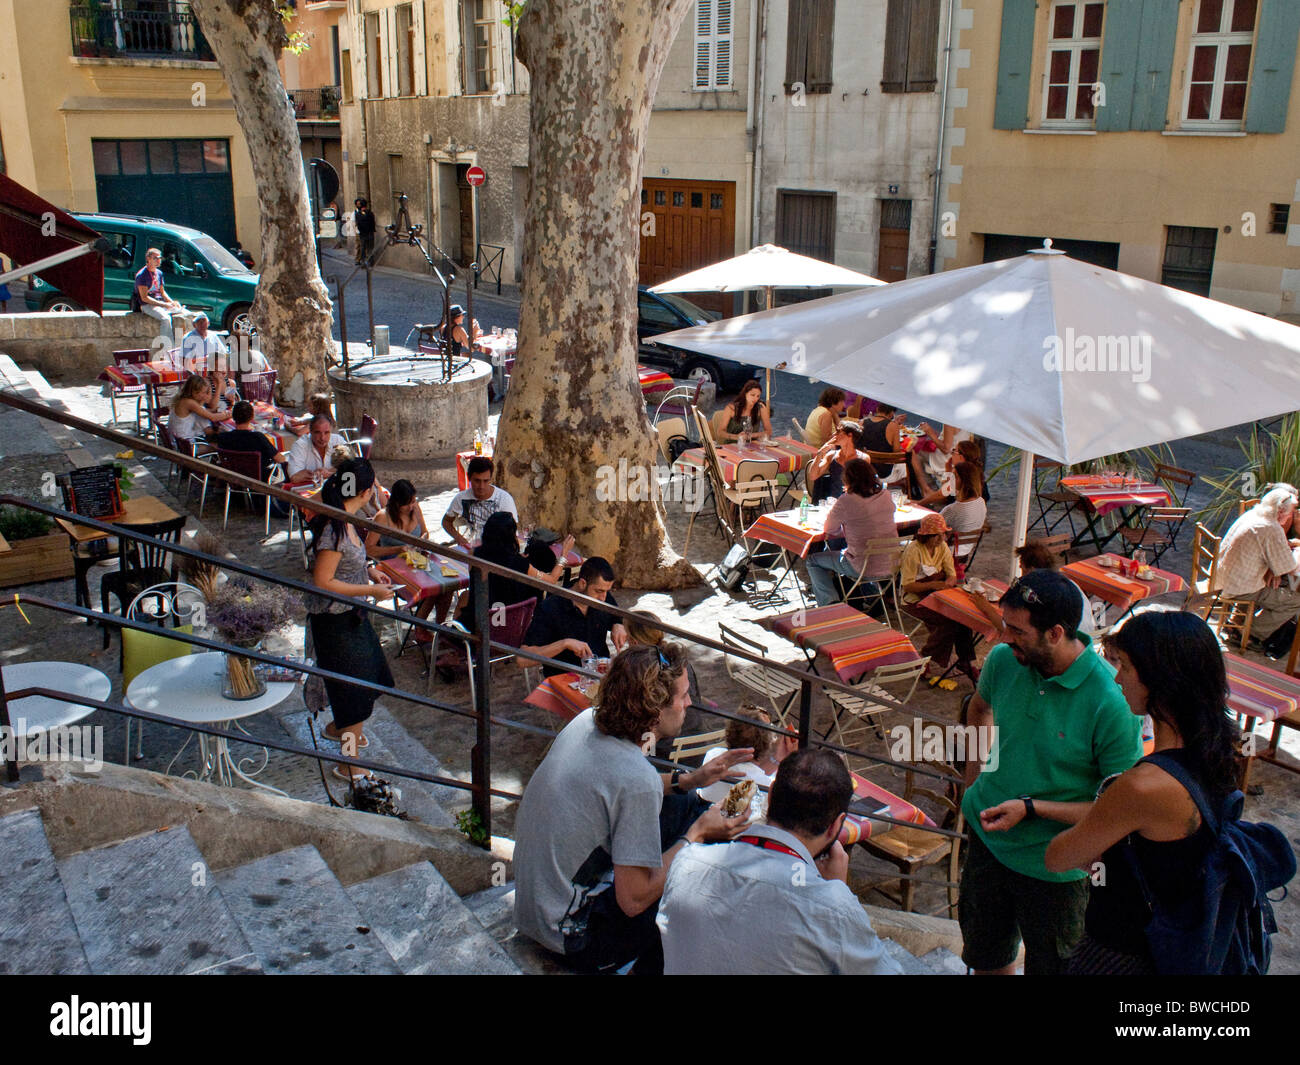 Restaurant le midi dans les vieux quartiers de Perpignan lors de la Visa pour l'image du photojournalisme Banque D'Images